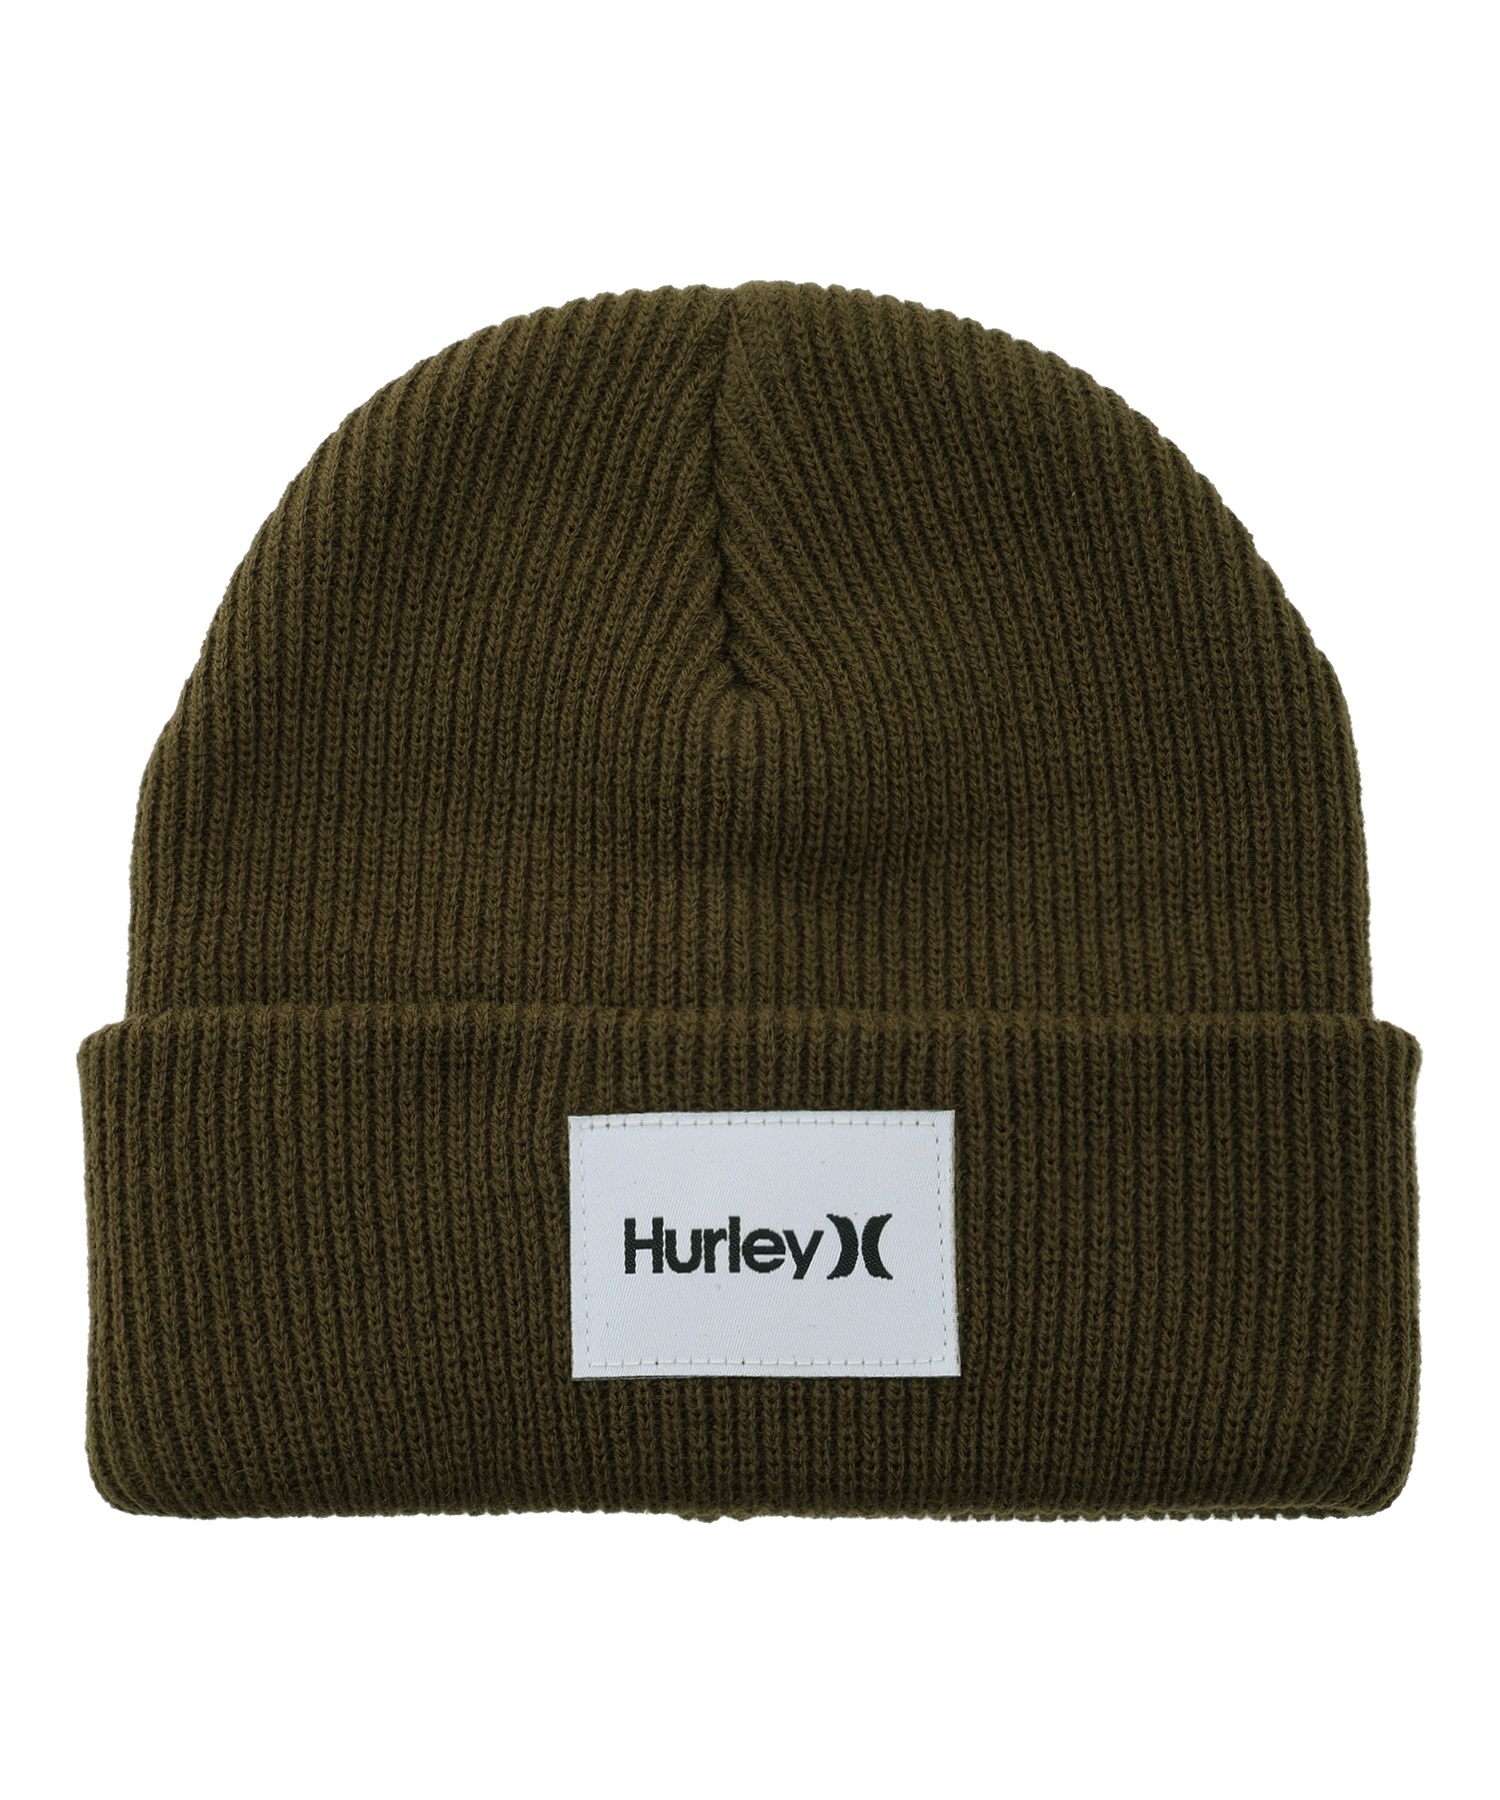 Hurley ハーレー ビーニーBHW2200001 キッズ ビーニー(OLV-F)